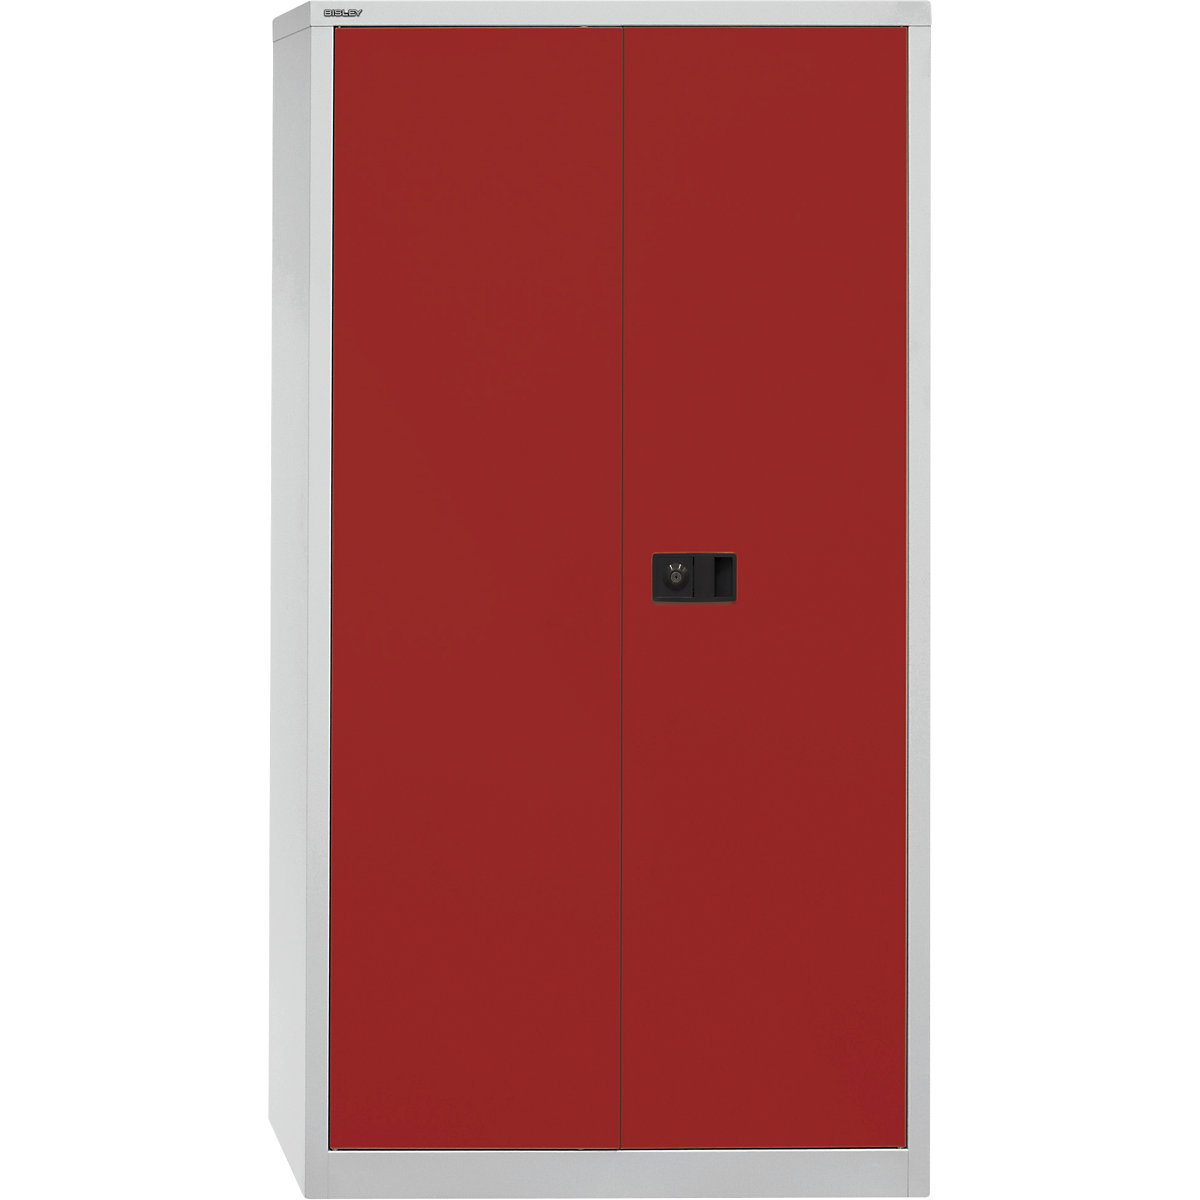 Armoire à portes battantes UNIVERSAL – BISLEY, h x l x p 1806 x 914 x 400 mm, 3 tablettes galvanisées, 4 hauteurs de classeurs, gris clair / rouge cardinal-6